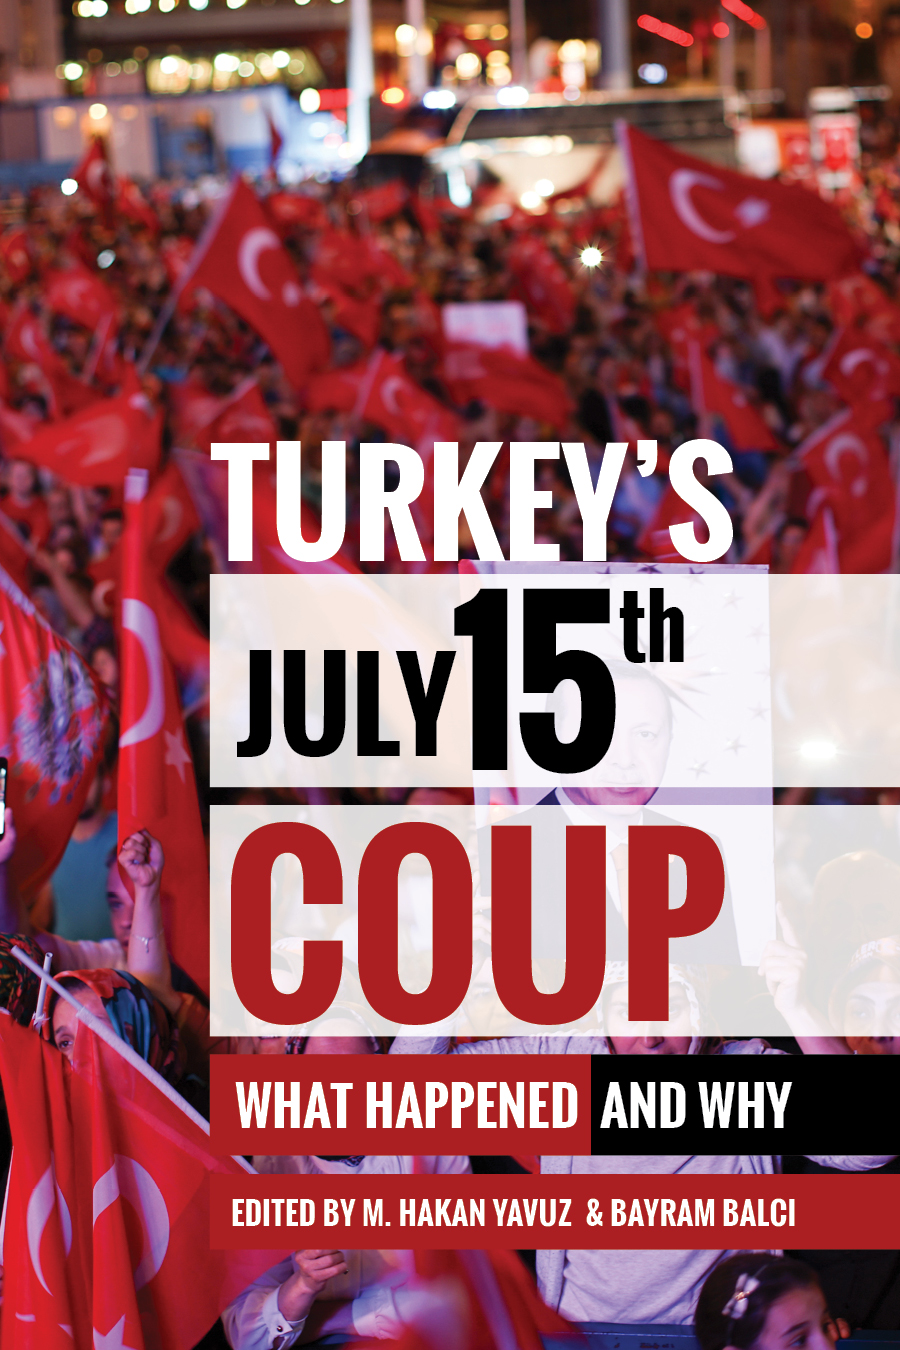 Buchcover "Turkey's July 15th Coup - What Happened and Why" von M. Hakan Yavuz und Bayram Balci, Verlag: The University of Utah Press, Salt Lake City